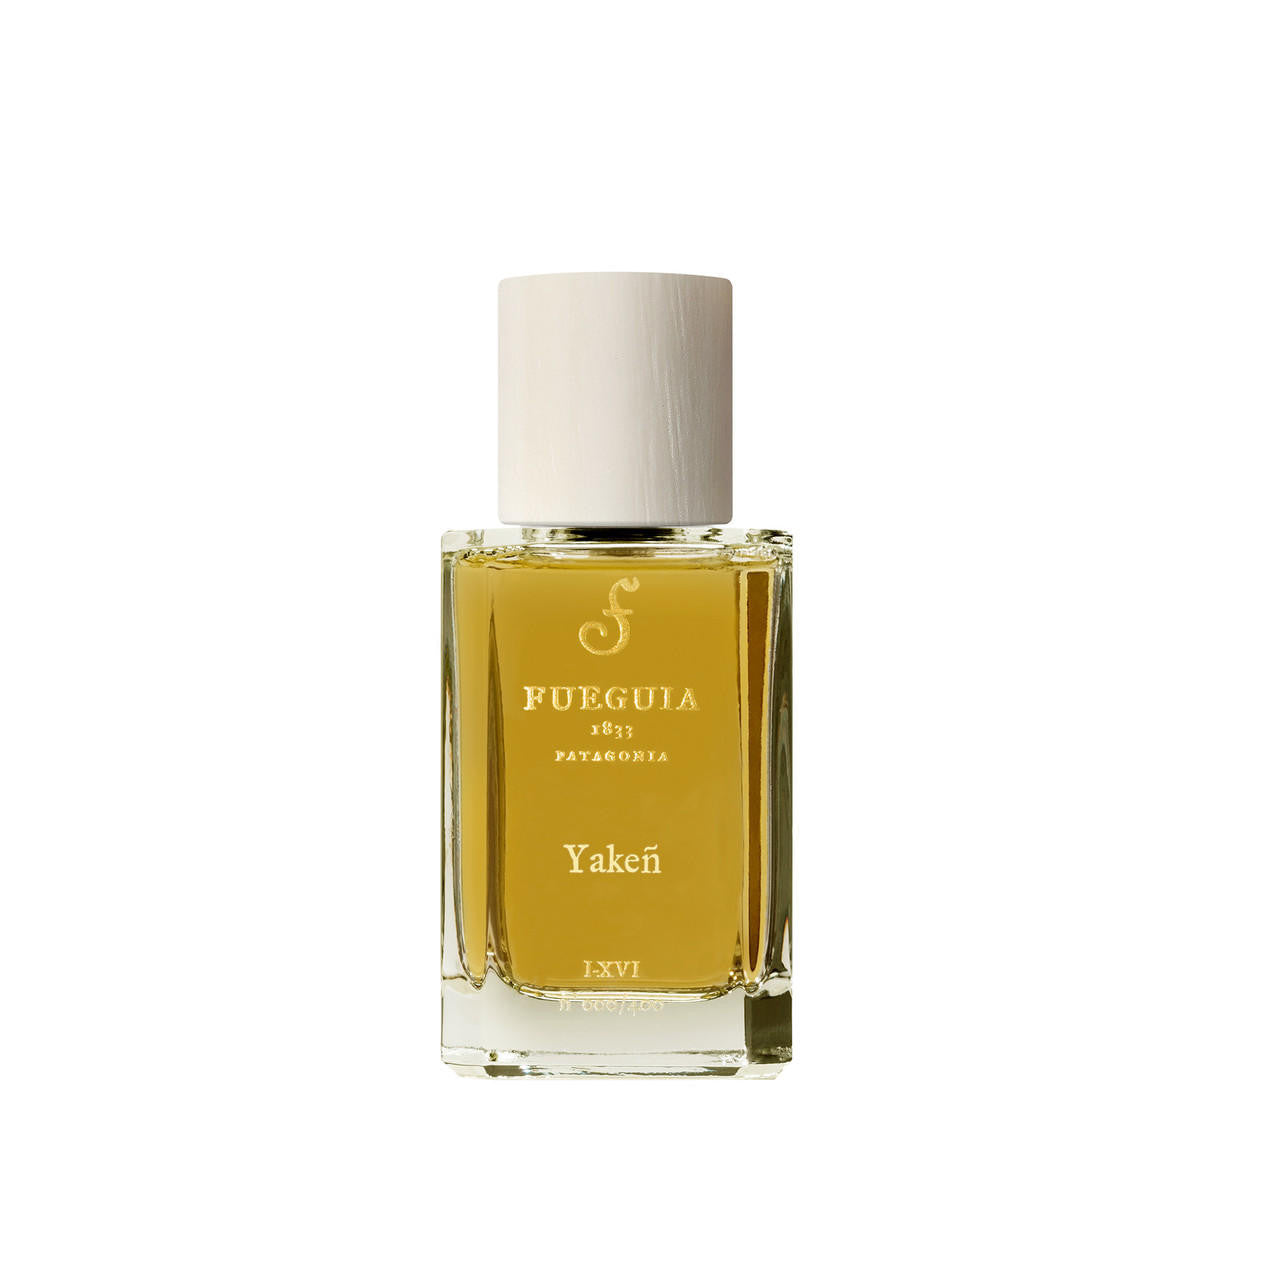 Fueguia 1833 – ZGO Perfumery